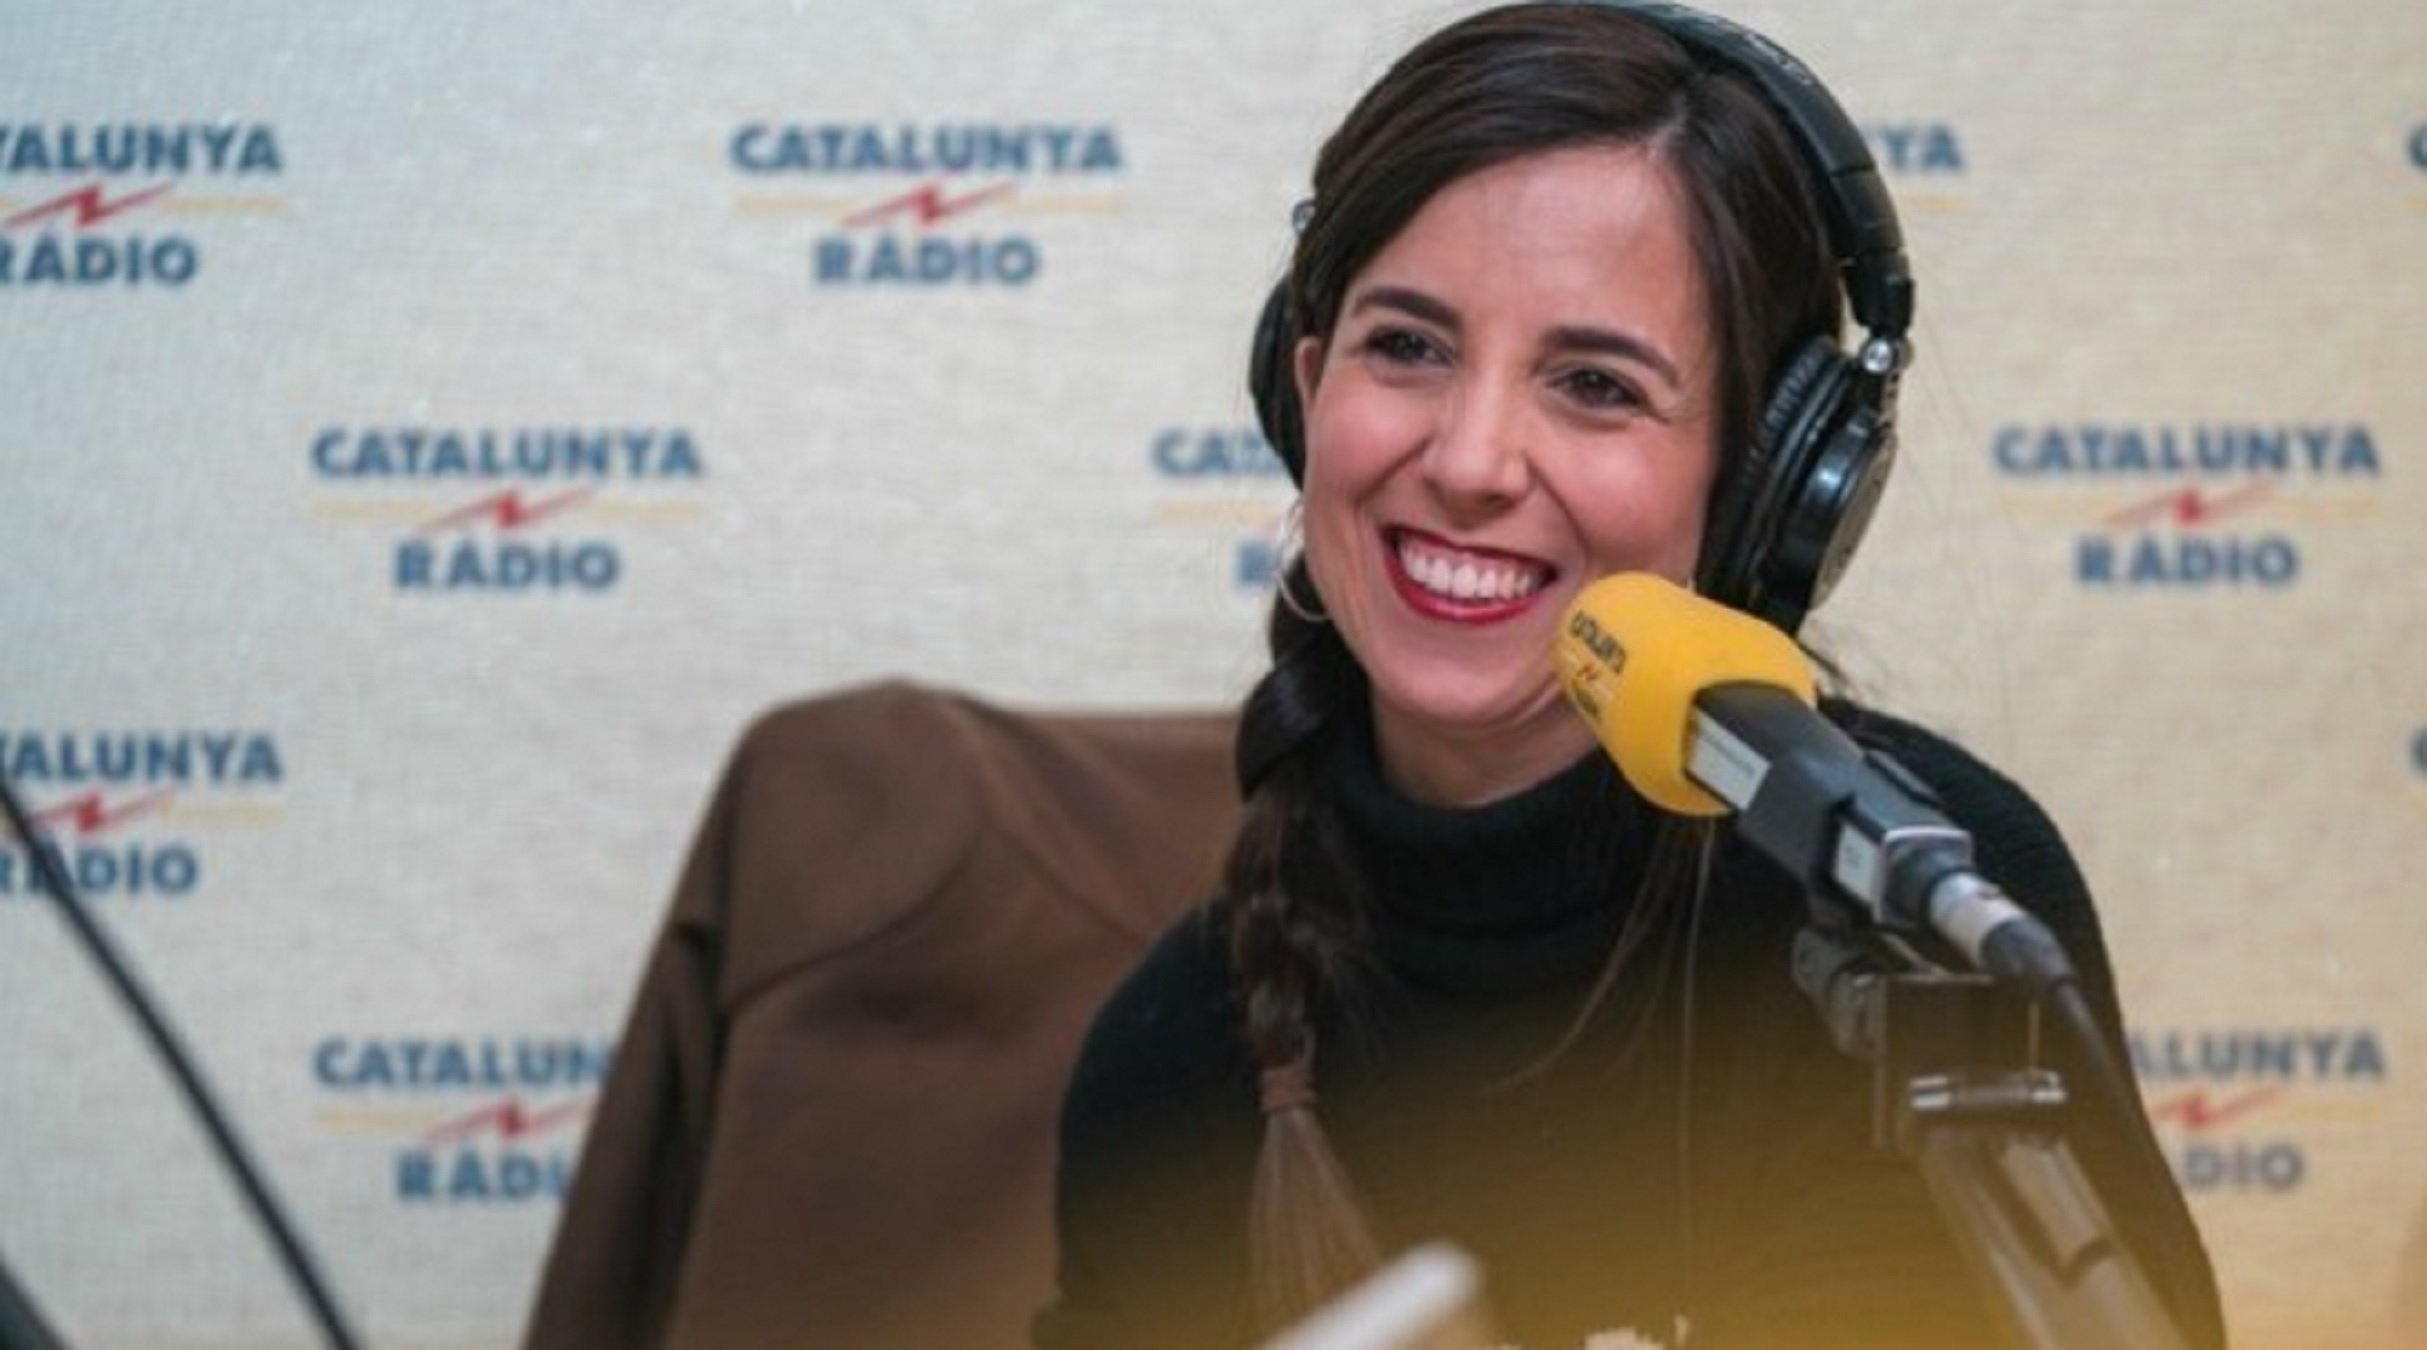 Comentaris masclistes sobre Laura Rosel: enrenou amb una foto de Catalunya Ràdio